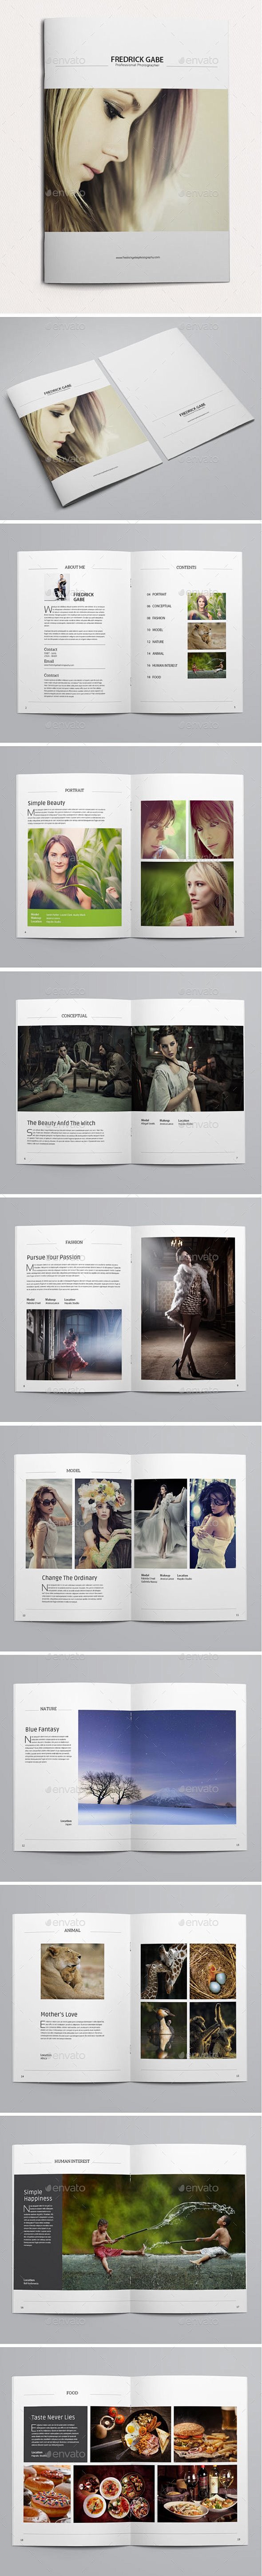 40例美丽时尚的宣传画册模板设计 设计圈...